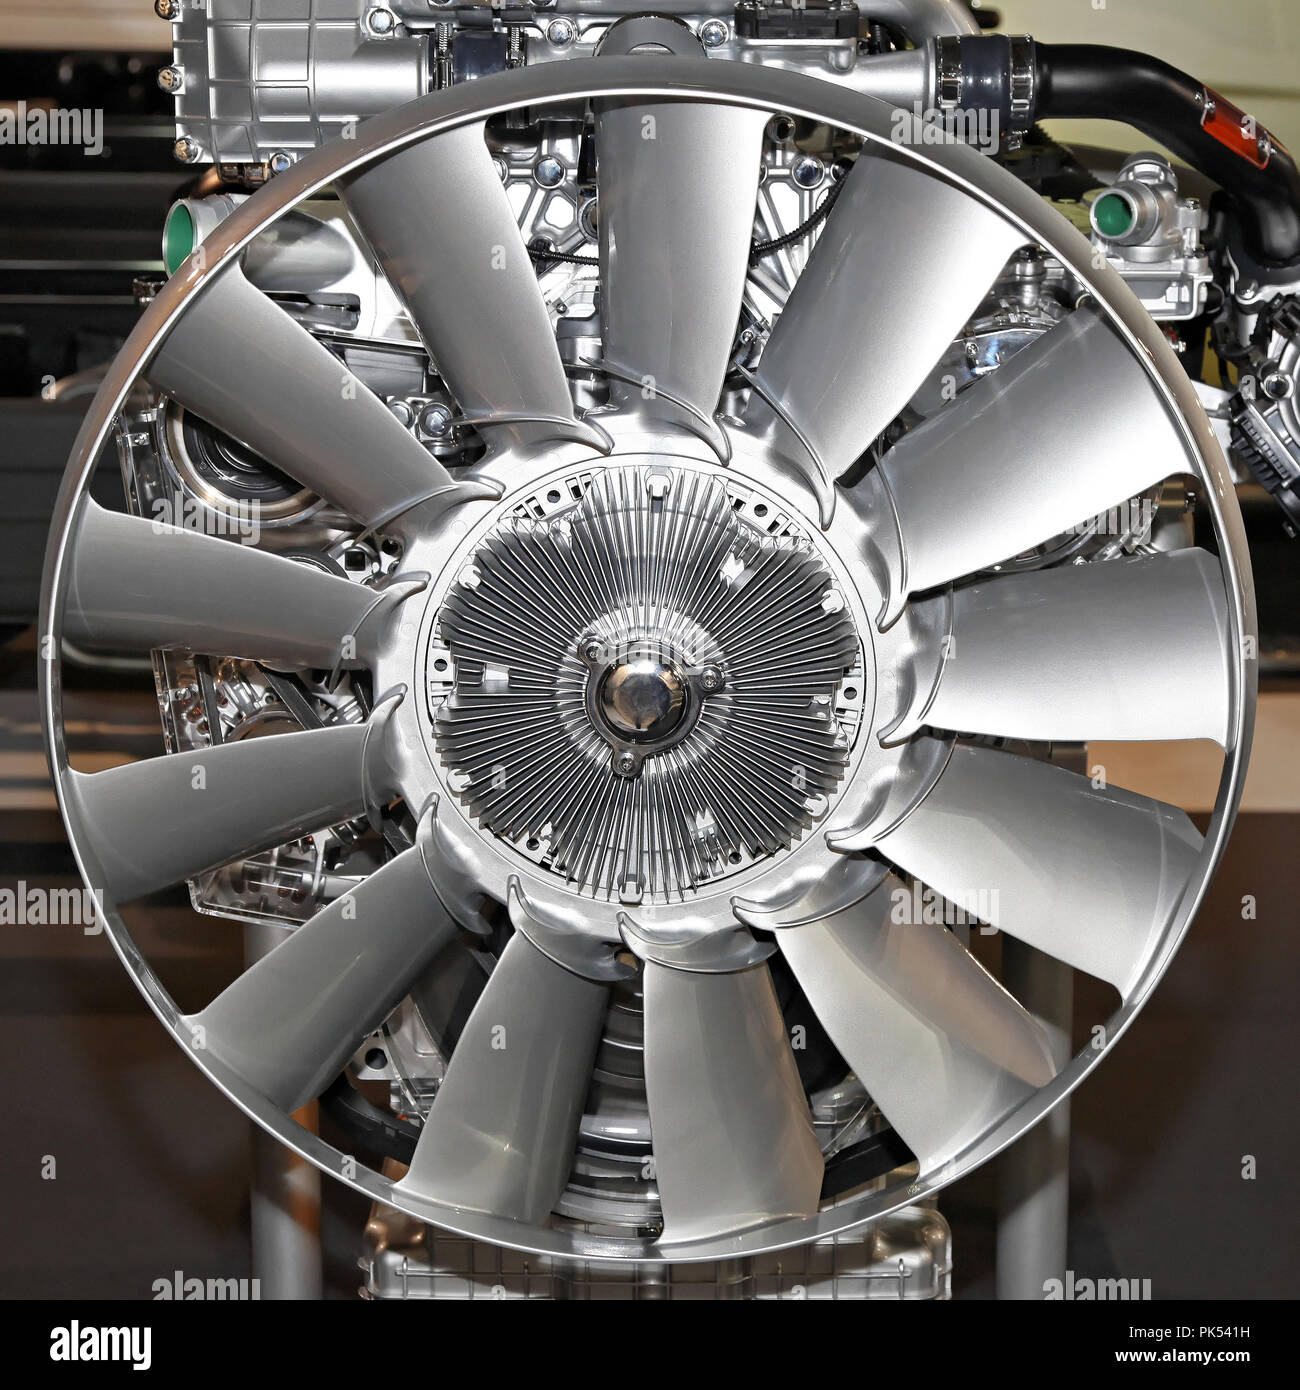 Silber Ventilator bei großen LKW-Motor Stockfotografie - Alamy